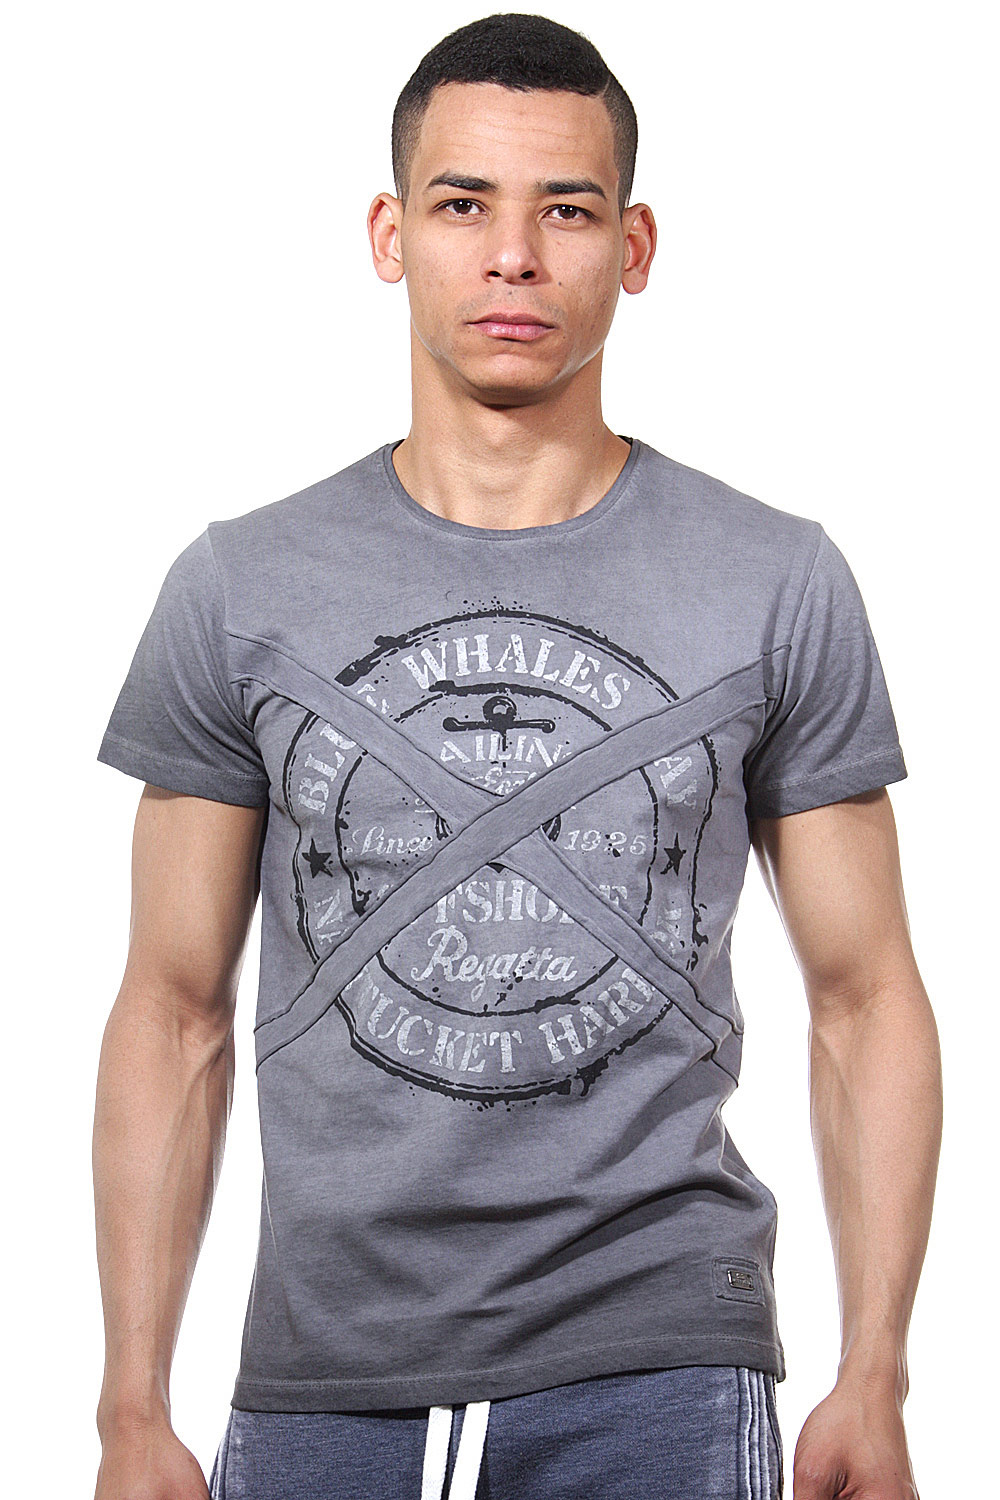 R-NEAL T-Shirt Rundhals slim fit auf oboy.de auf oboy.de